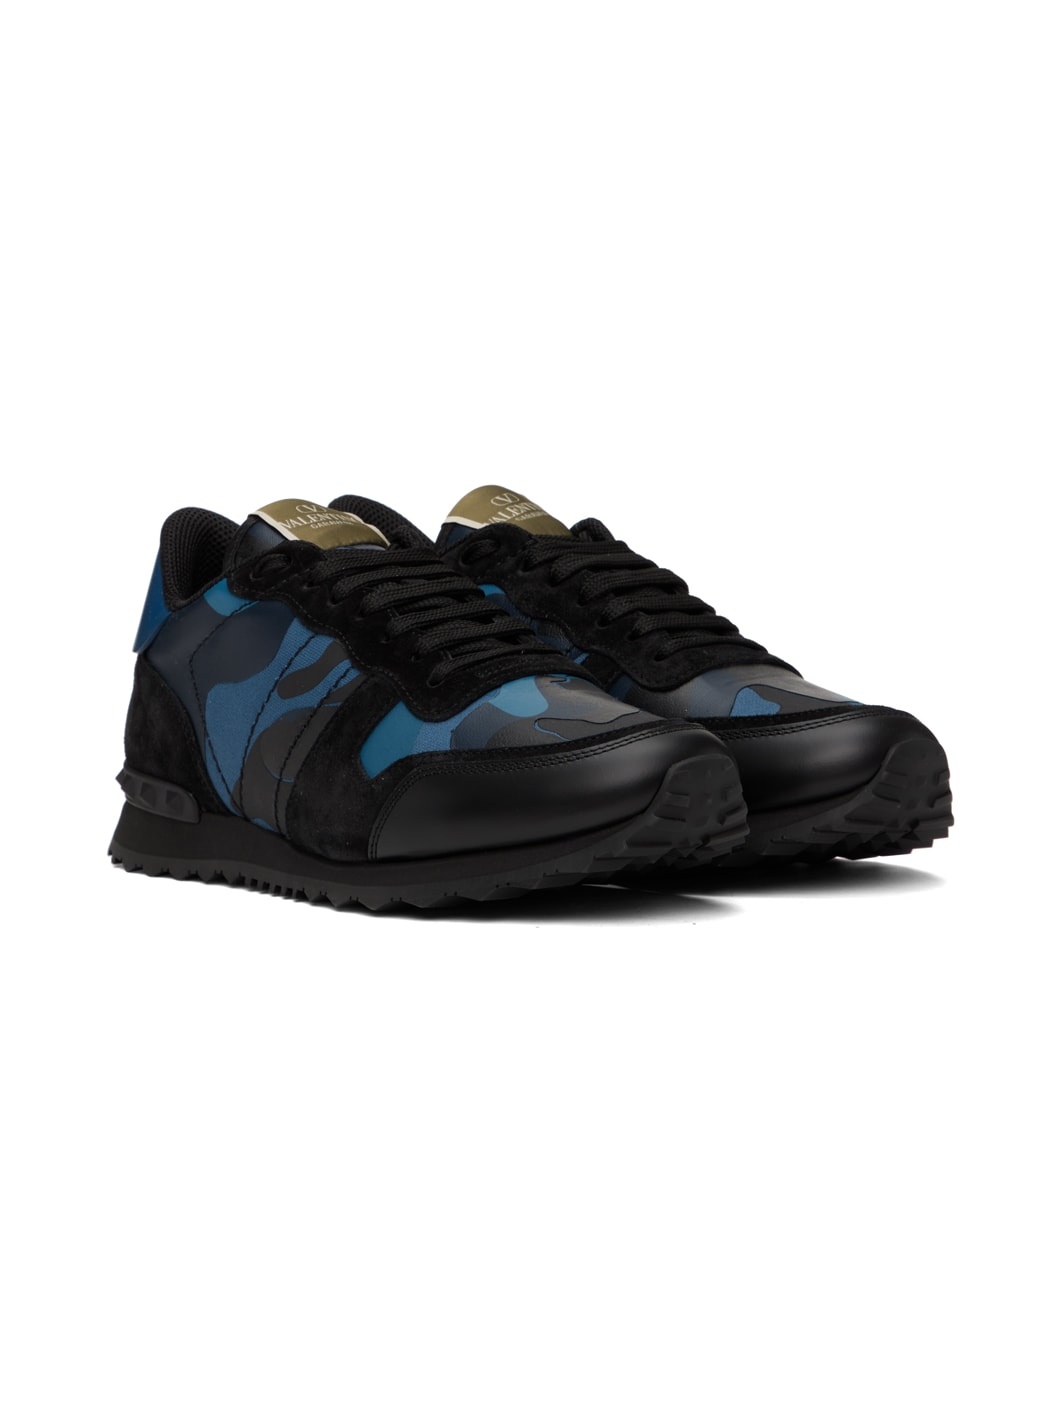 Black & Blue Rockrunner Sneakers - 4